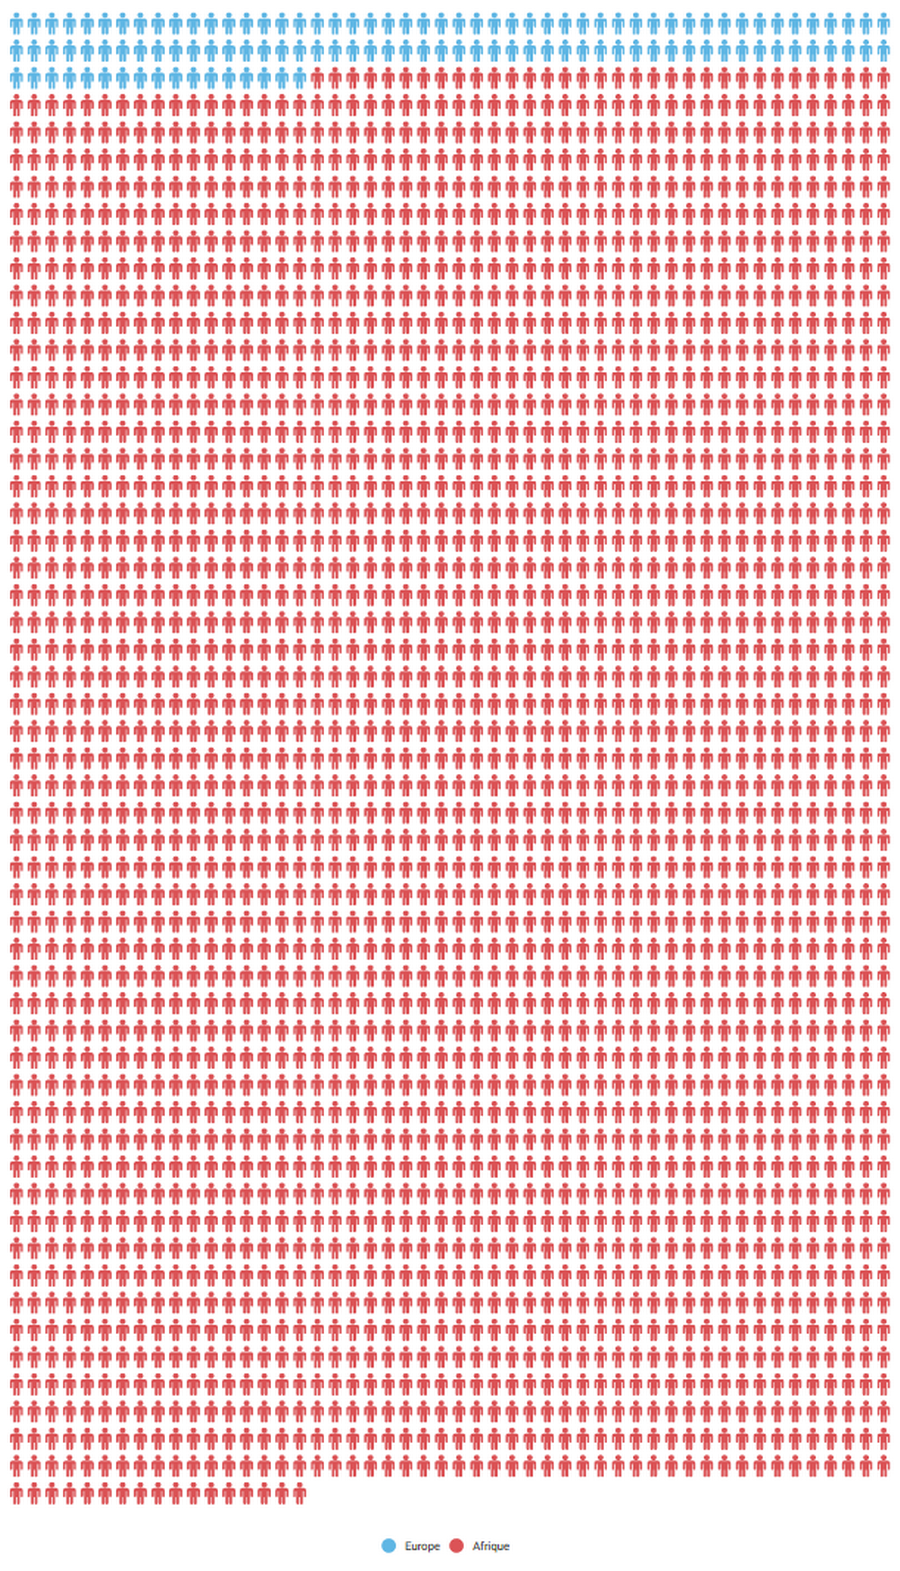 Nombre de morts depuis le 1er janvier 2017 dans des attaques terroristes en Europe (bleu) et en Afrique (rouge).